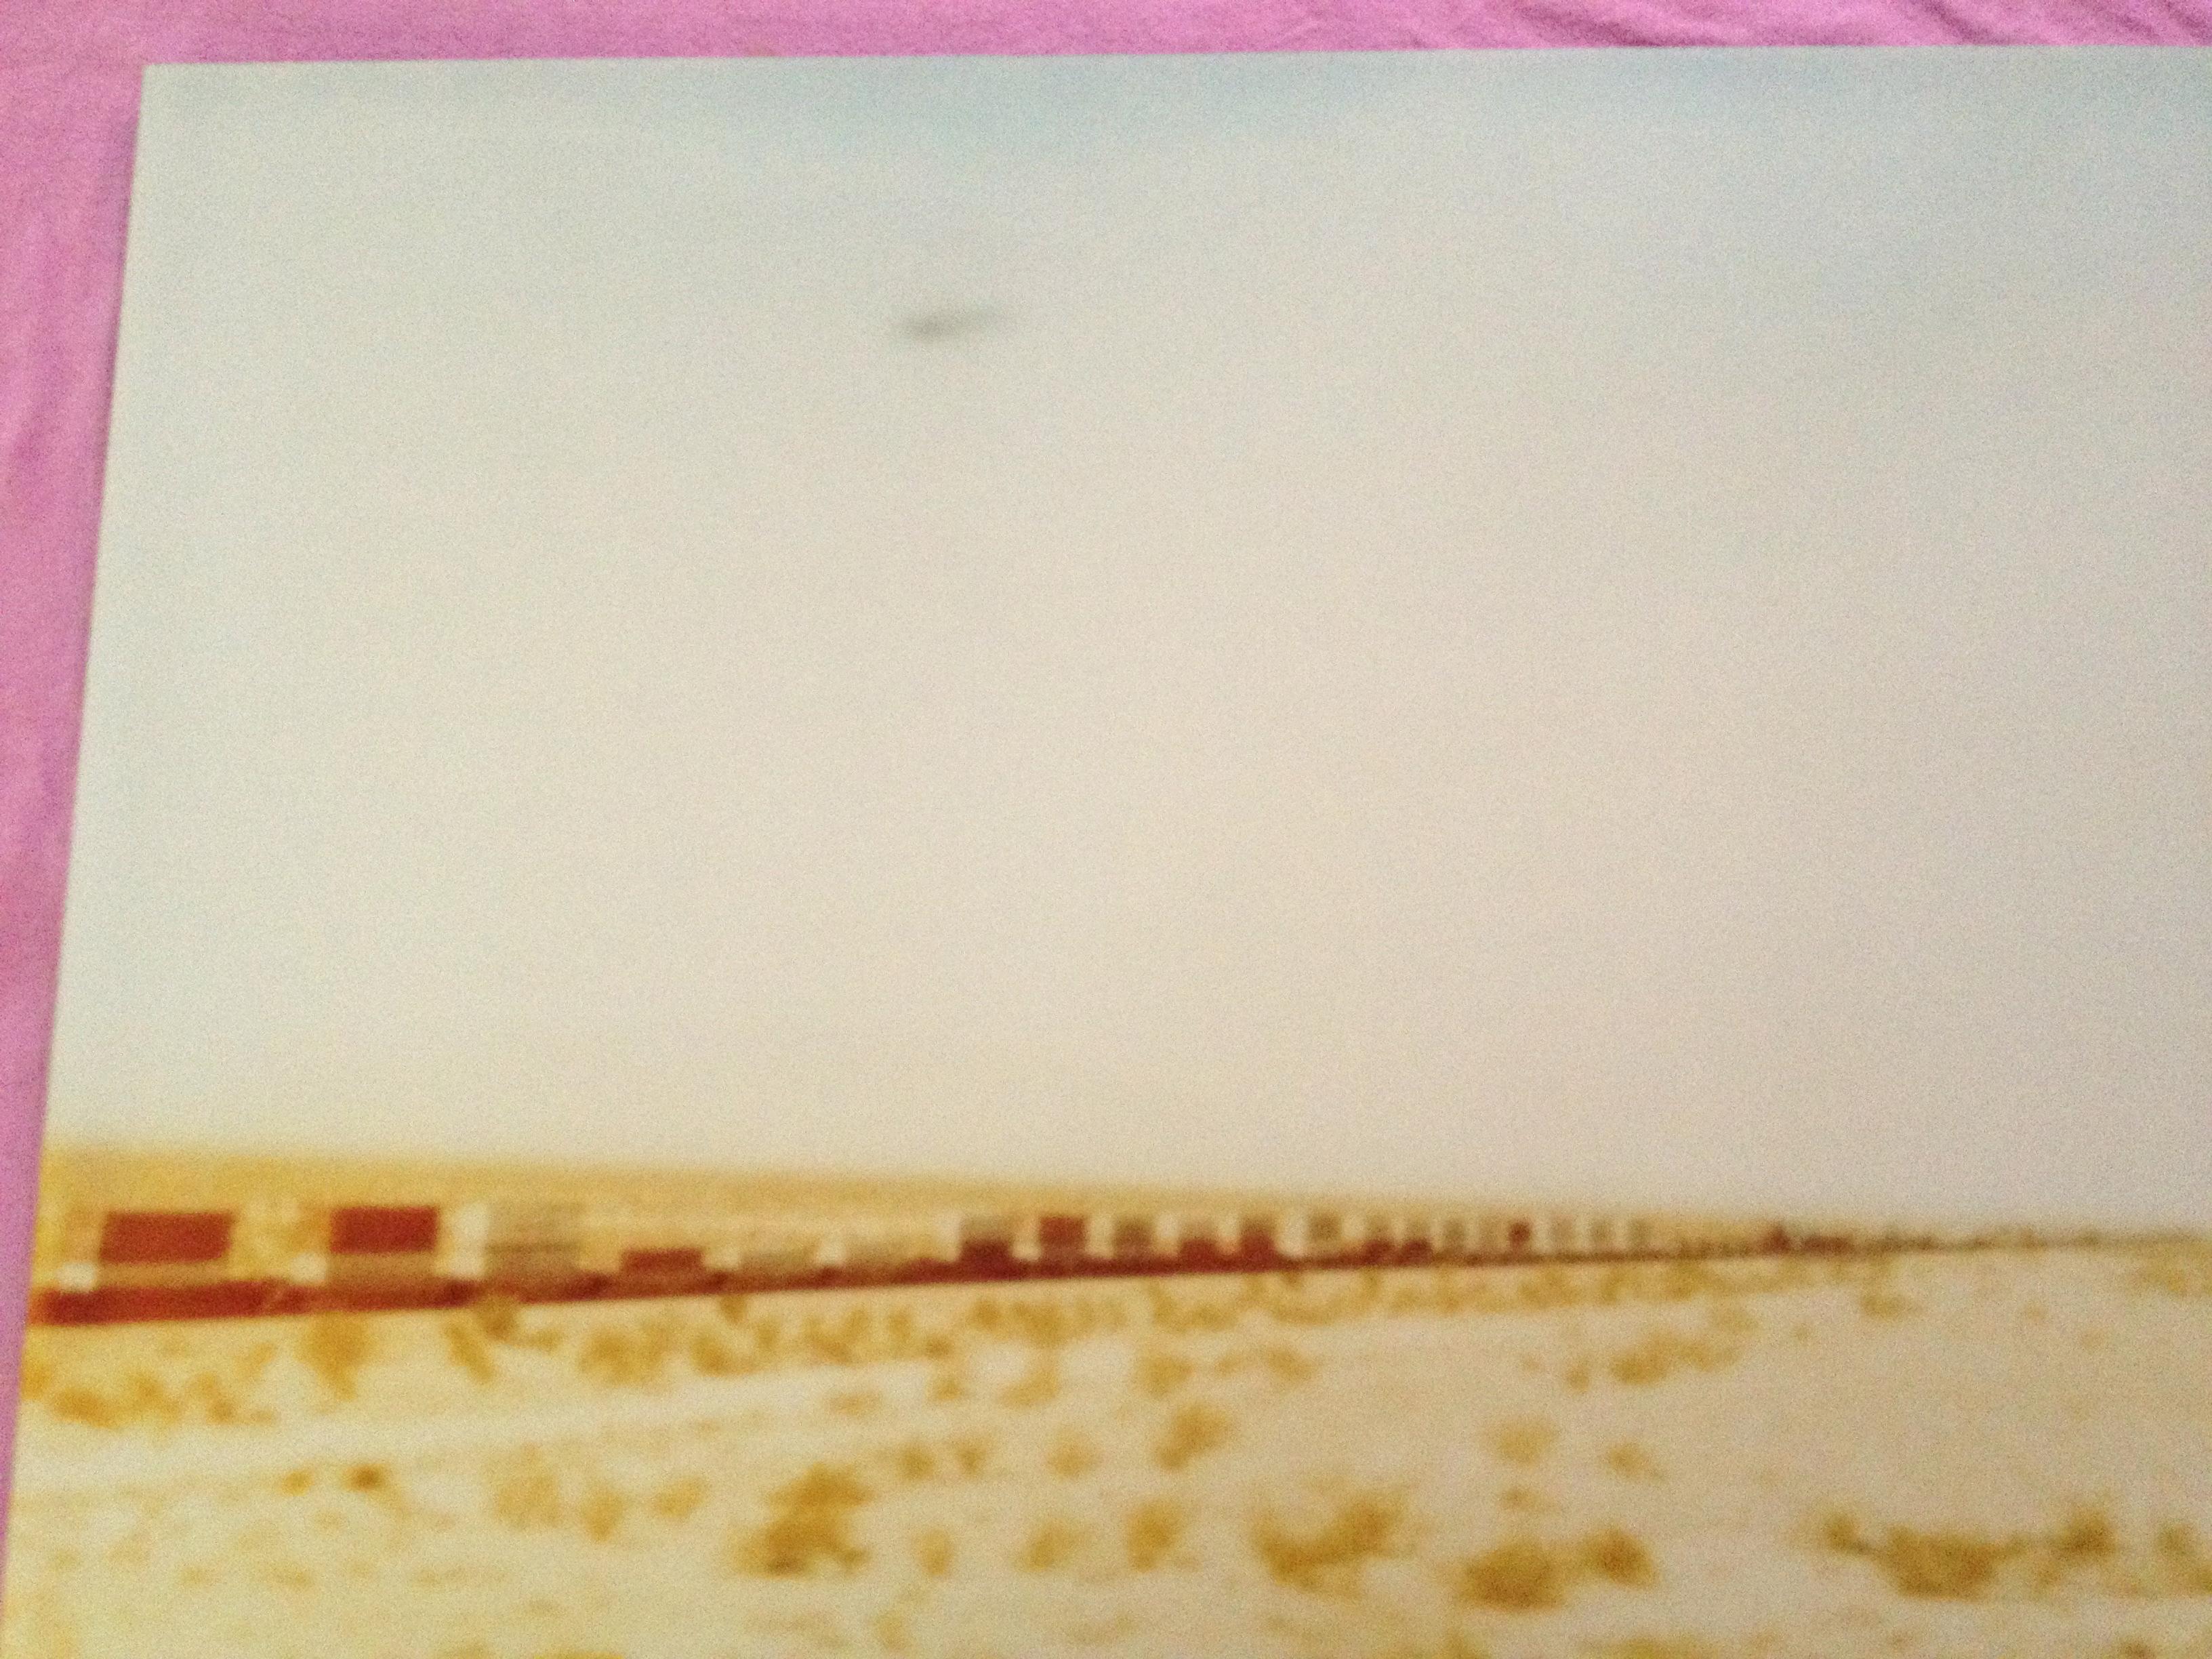 Train crosses Plain (Wastelands) - analoger Handdruck, montiert - Polaroid, Farbe (Beige), Landscape Photograph, von Stefanie Schneider